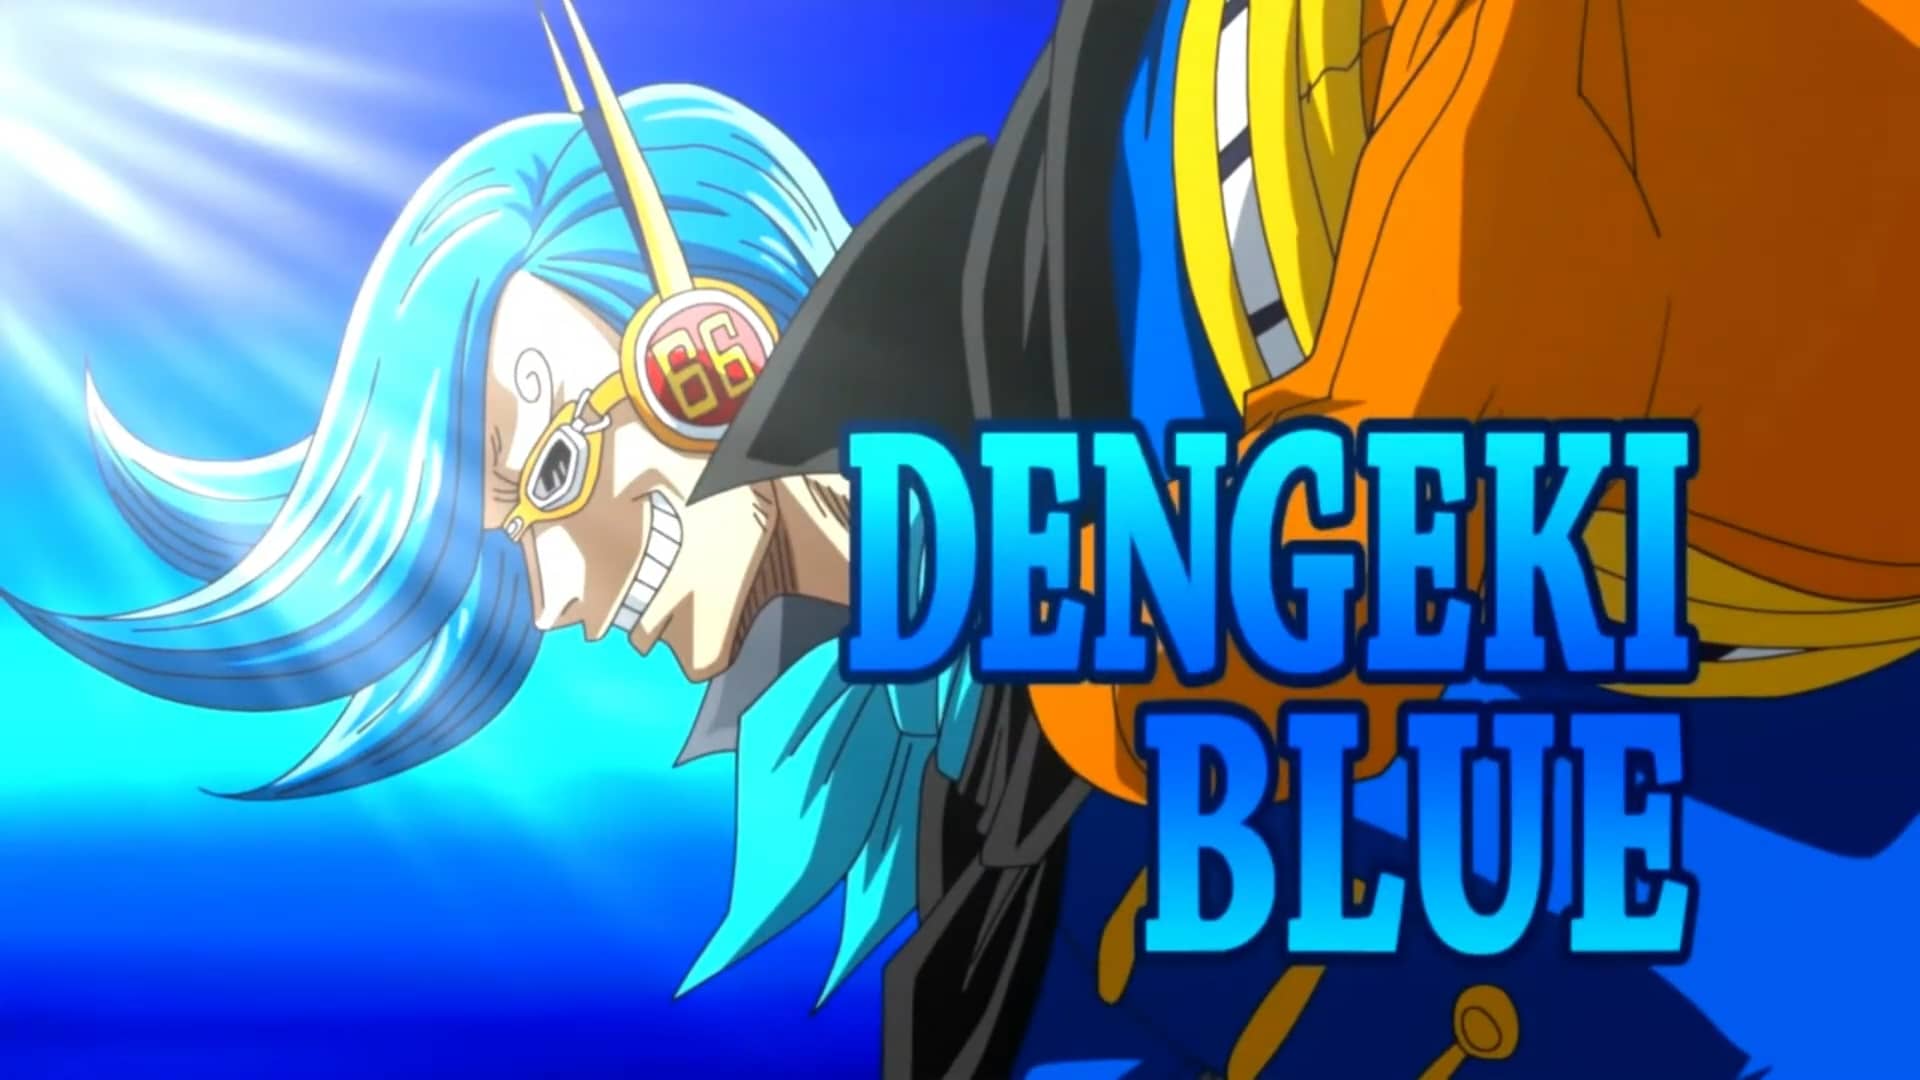 Dengki blue - Germa 66 no. 2